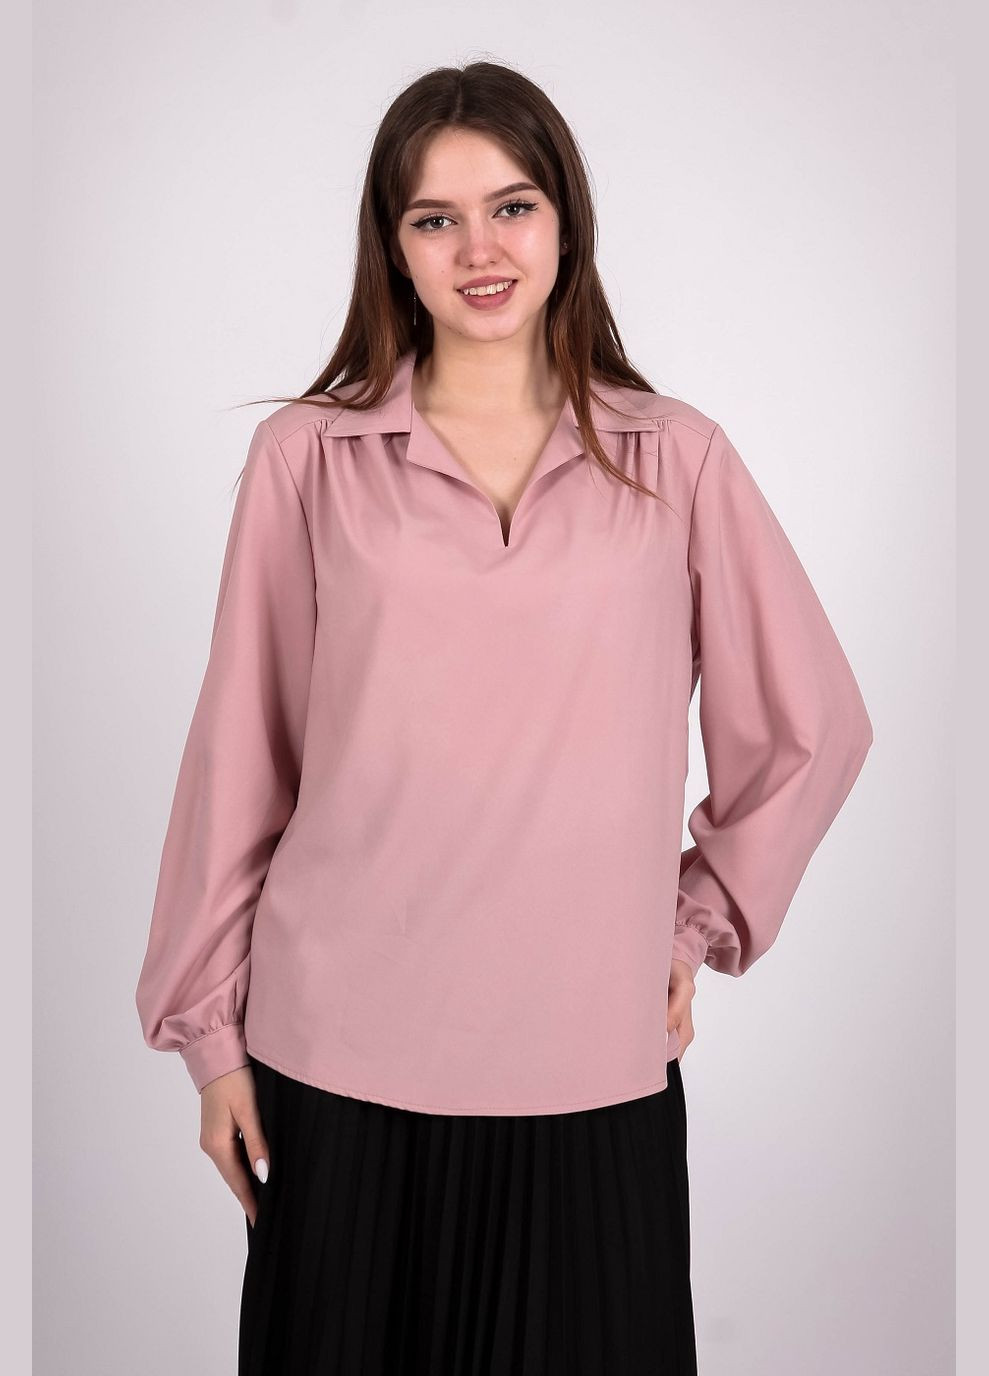 Пудрова блузка жіноча 052 однотонний софт світло-пудрова Актуаль